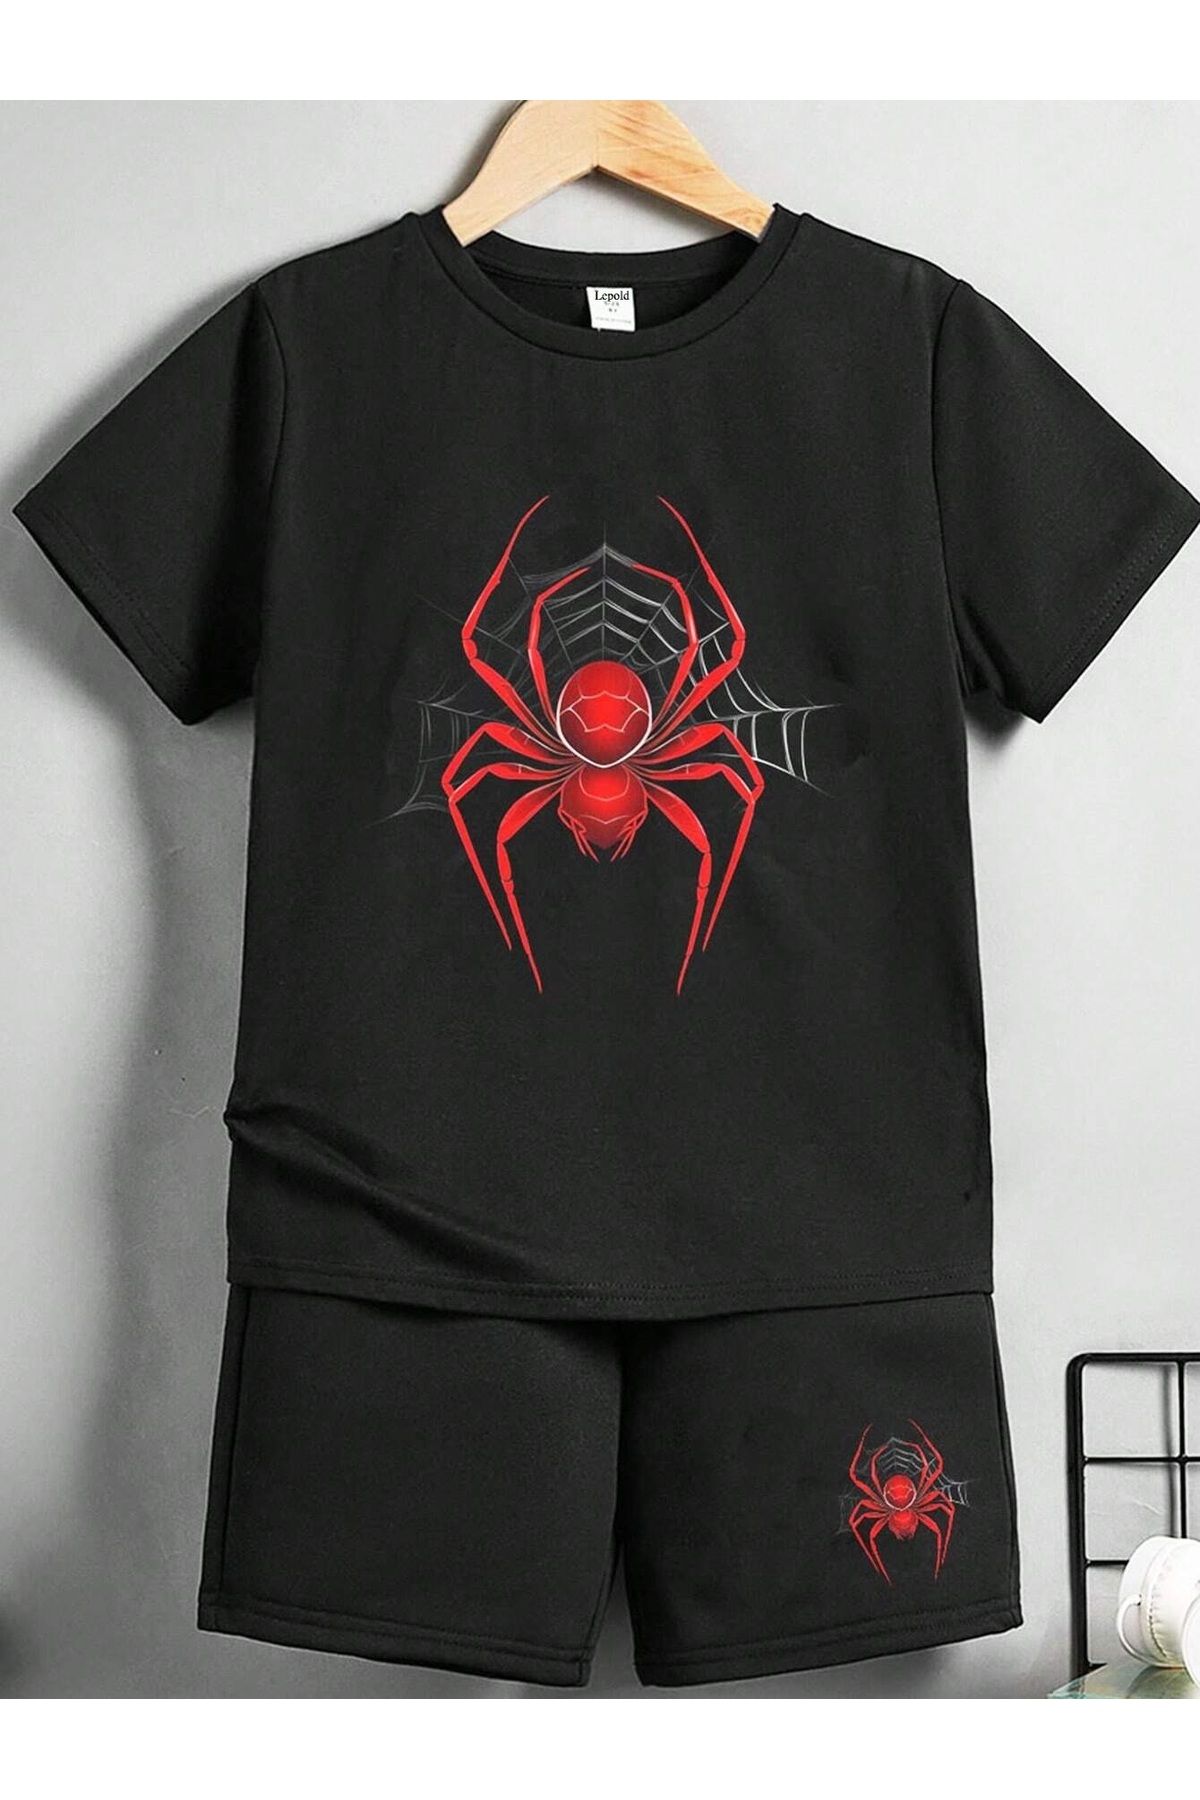 LePold Erkek/Kız Çocuk Örümcek Desenli Tişört Ve Şort Takım